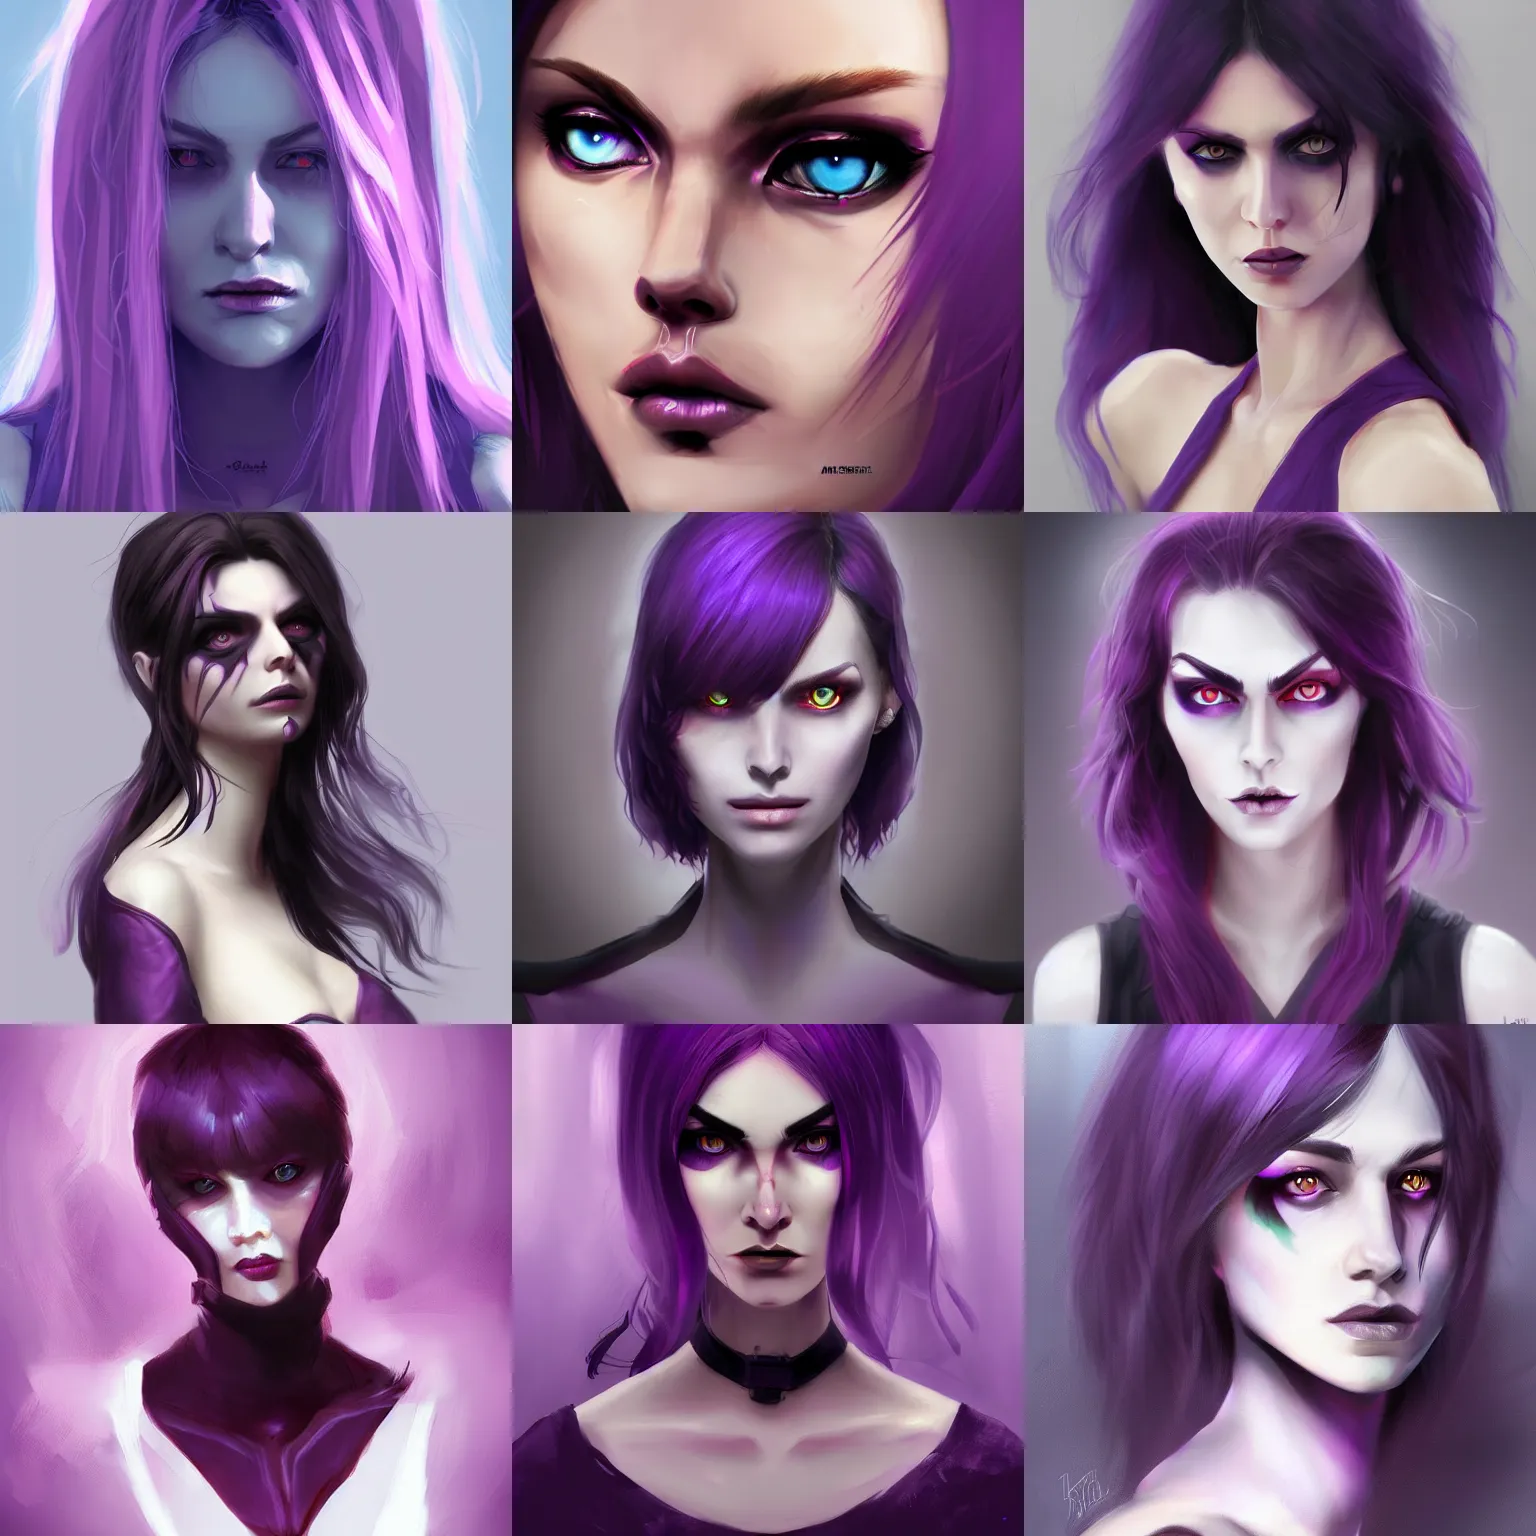 Prompt: Woman with purple eyes, dark, menacing, artstation, digital art